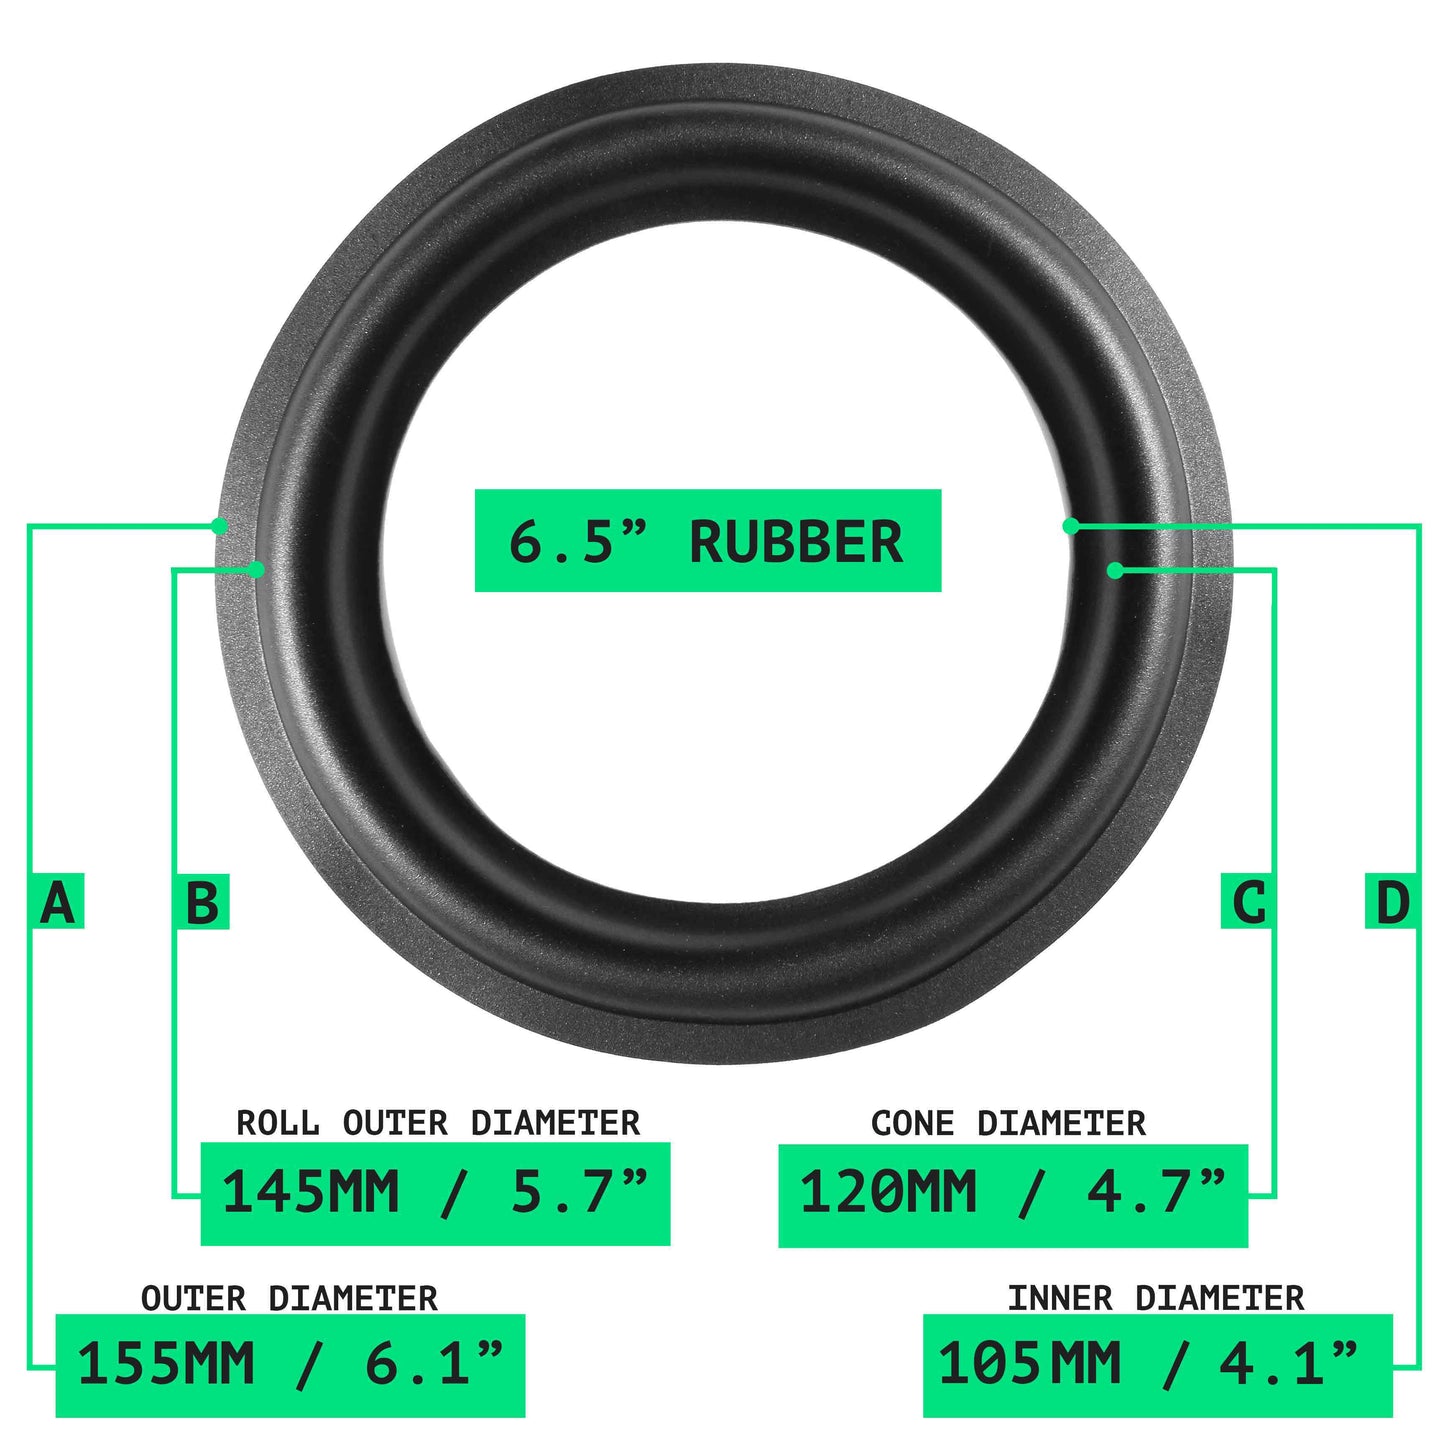 6.5" Rubber Repair Kit - OD:155MM ID:110MM